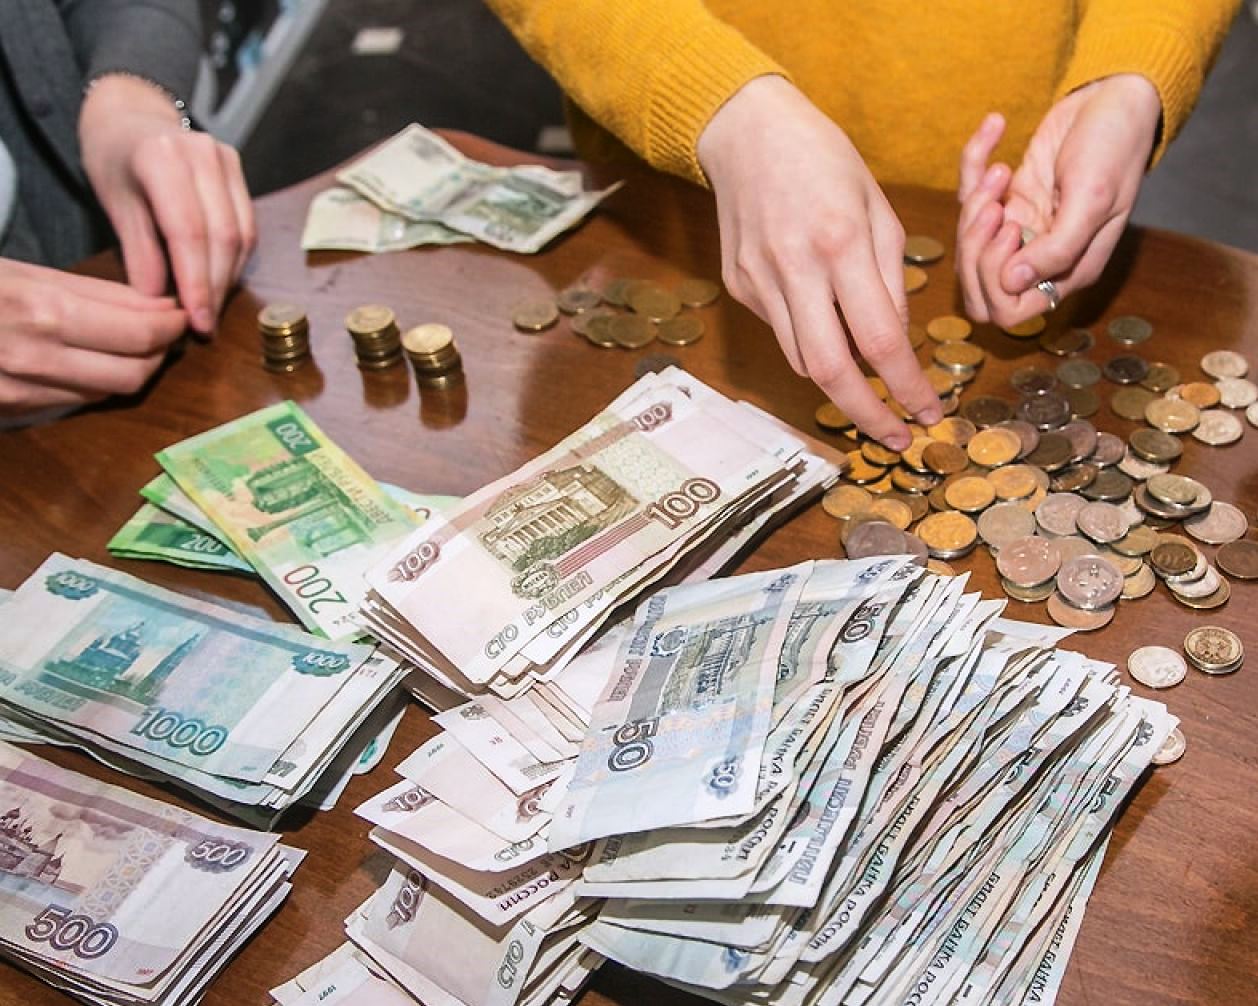 В Орле частной охранной организации задолжали 10 млн рублей